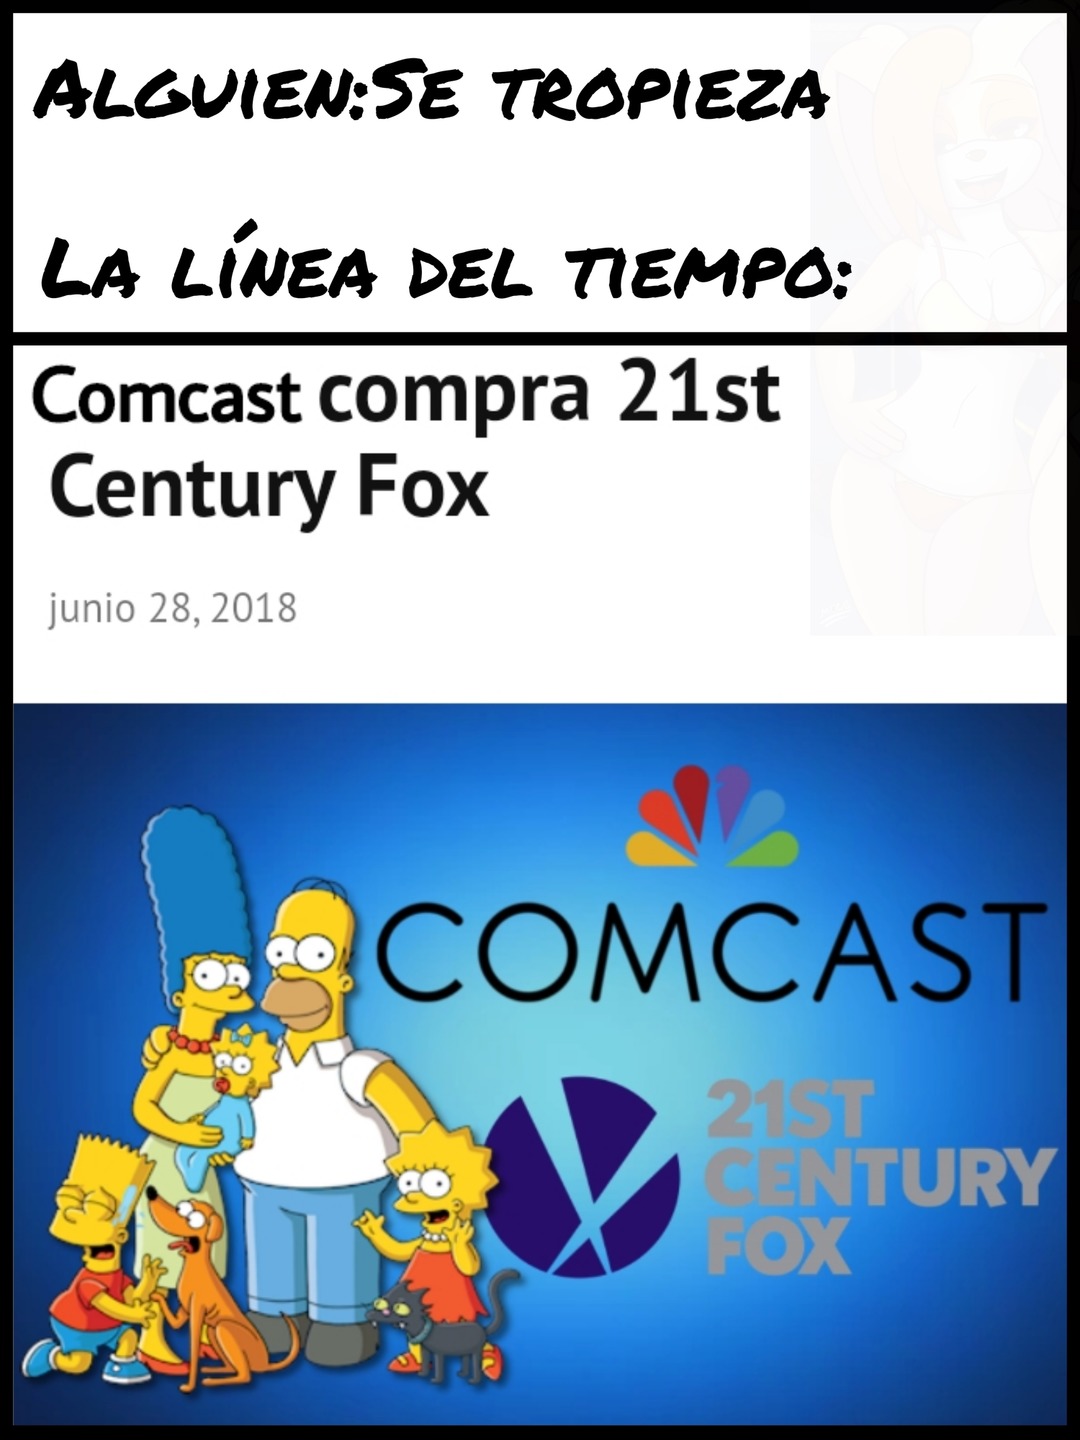 Comcast debió comprar fox y no Disney - meme